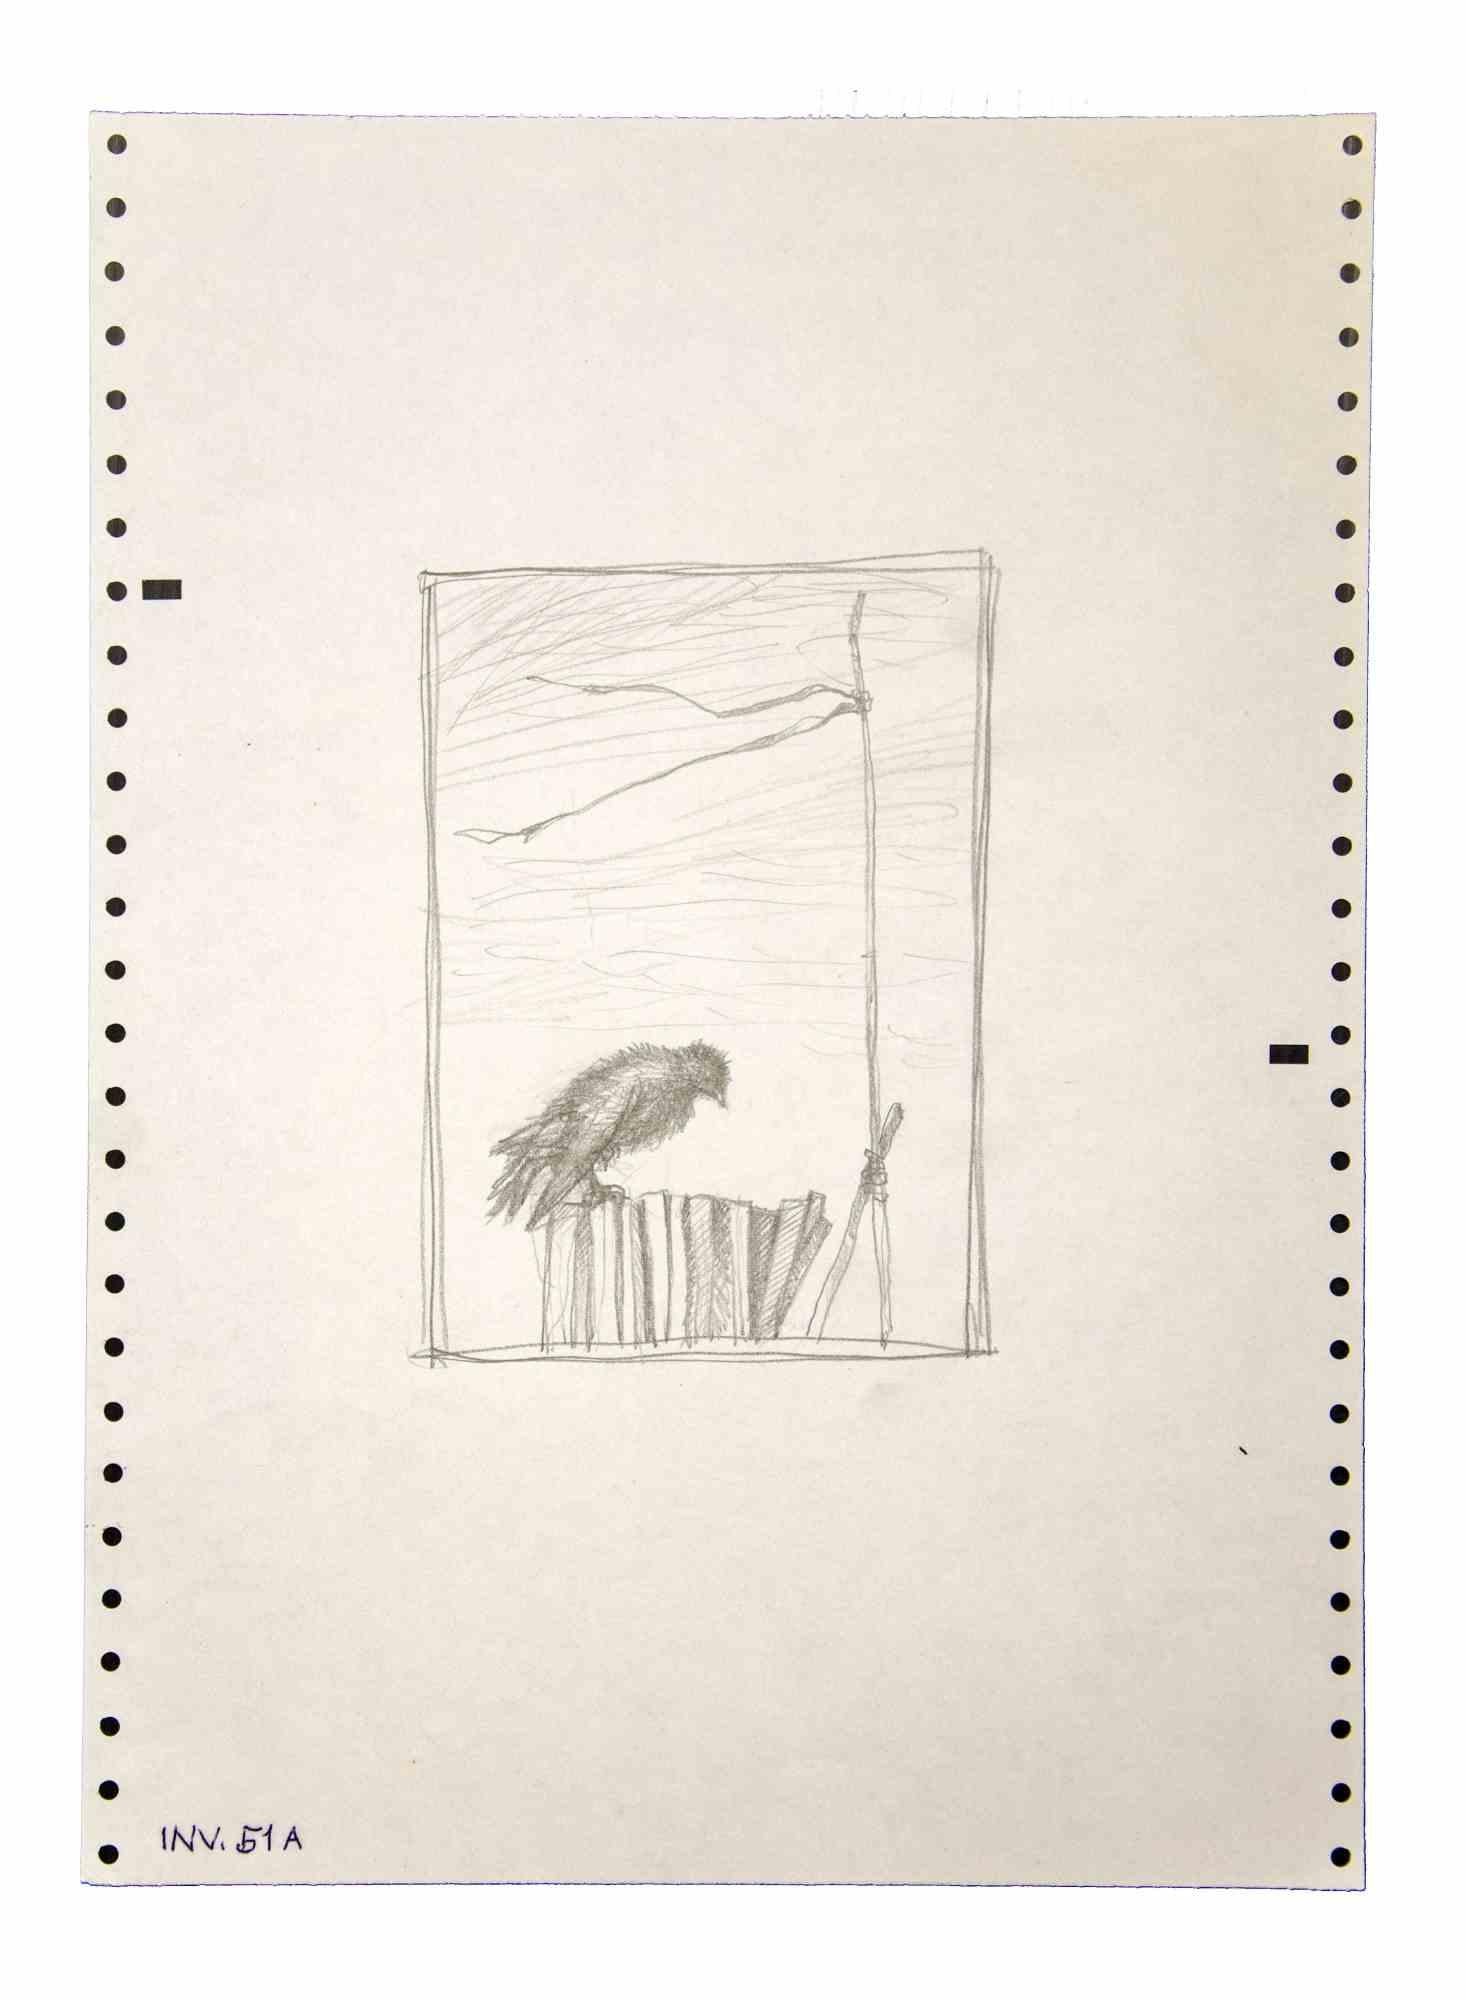 L'oiseau est un original  œuvre d'art réalisée dans les années 1970 par l'artiste contemporain italien  Leo Guida  (1992 - 2017).

Dessins originaux au crayon sur papier.

Bon état mais vieilli.

L'œuvre d'art est représentée par des traits forts